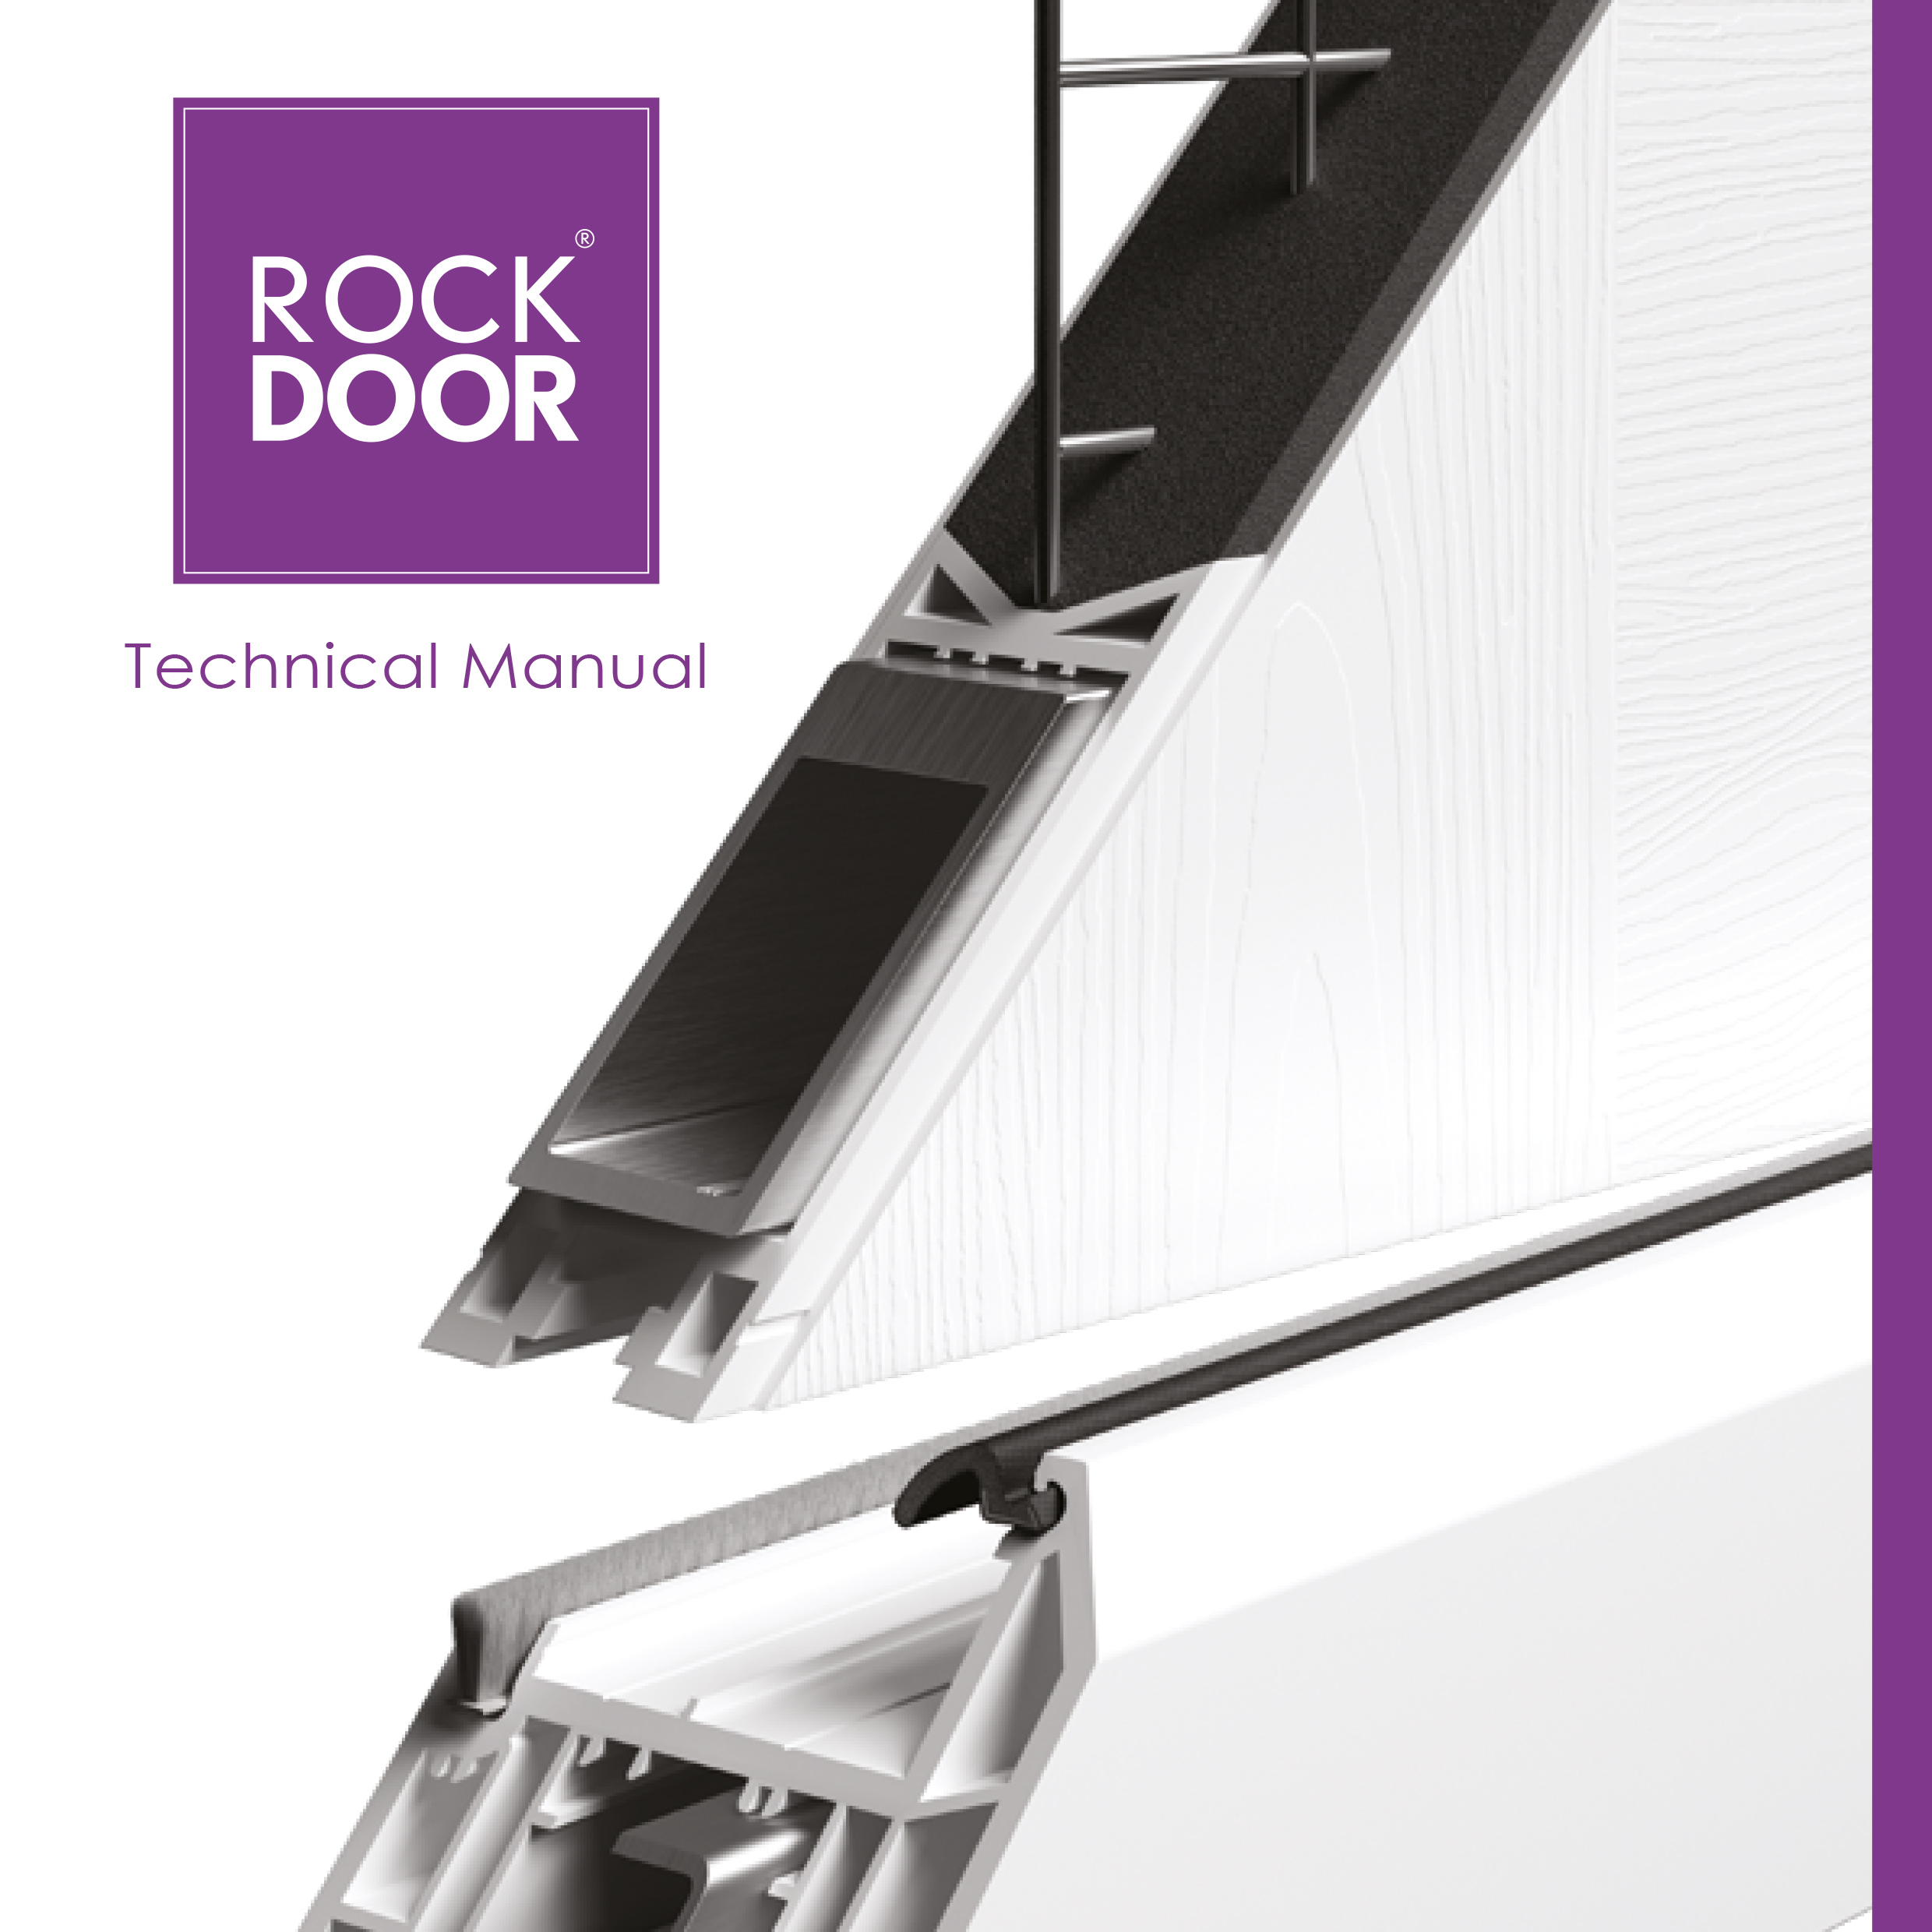 Rockdoor Technical Manual